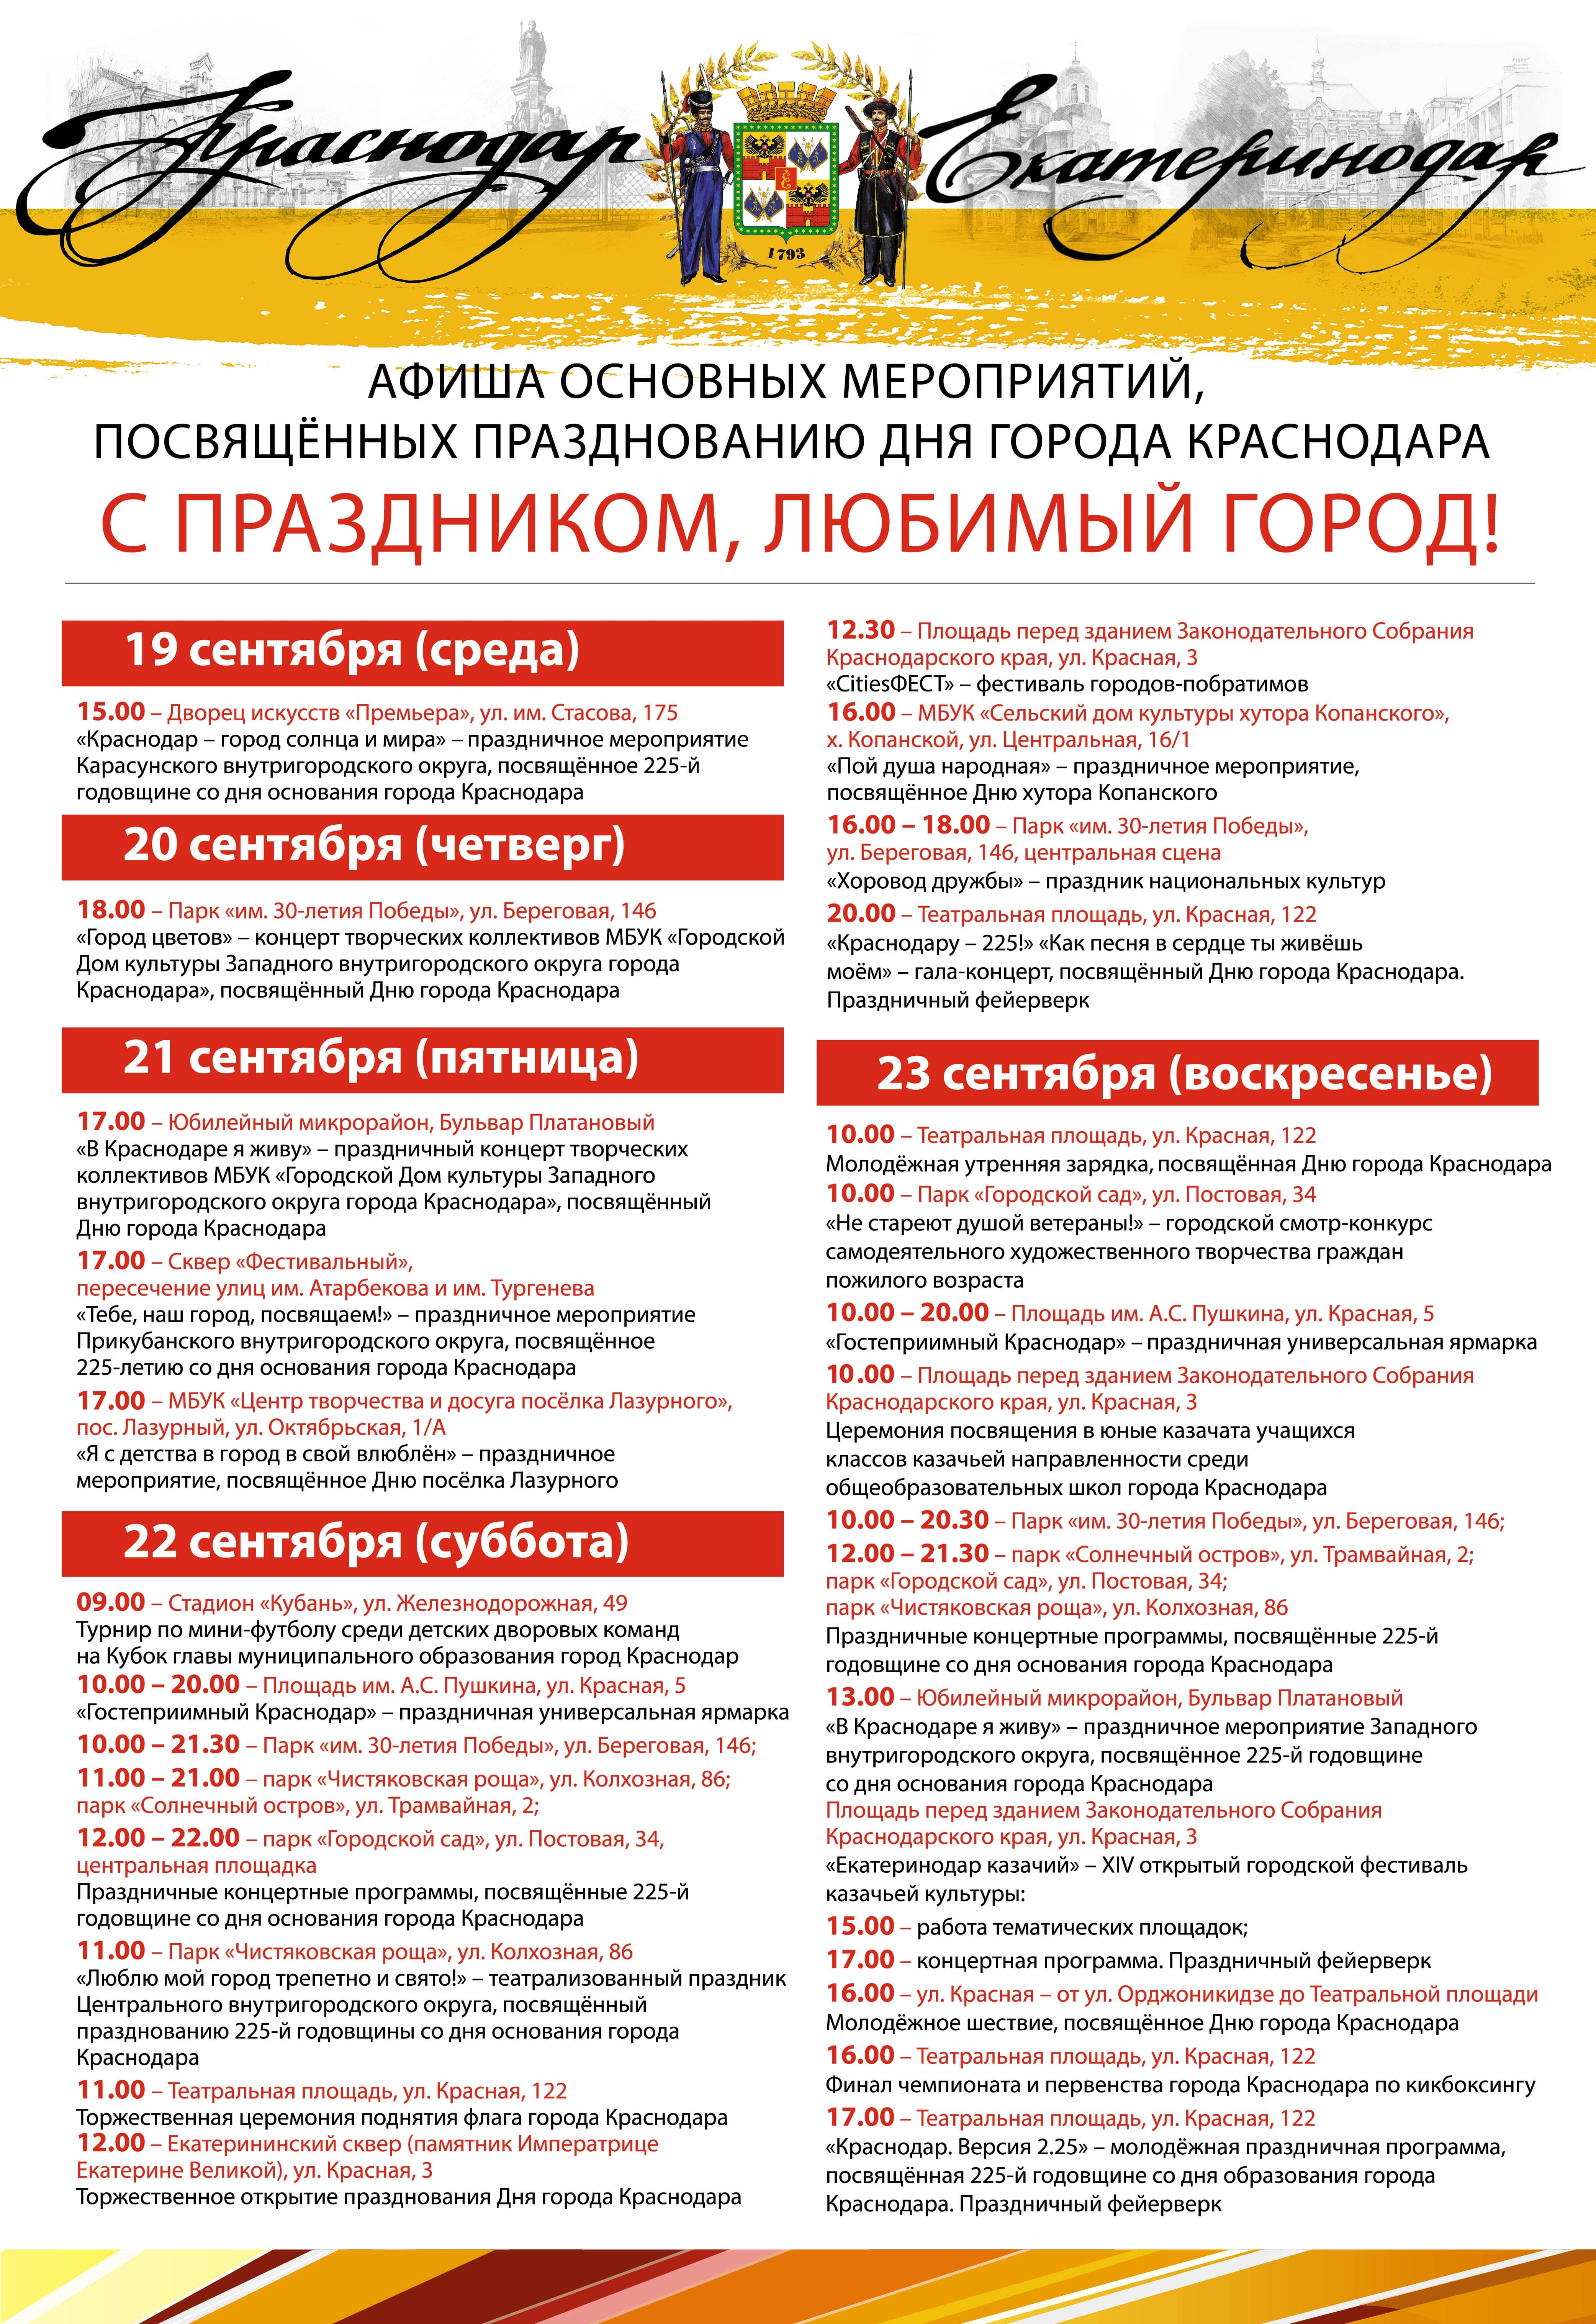 День города Краснодара 22 и 23 сентября 2018 – программа, когда салют